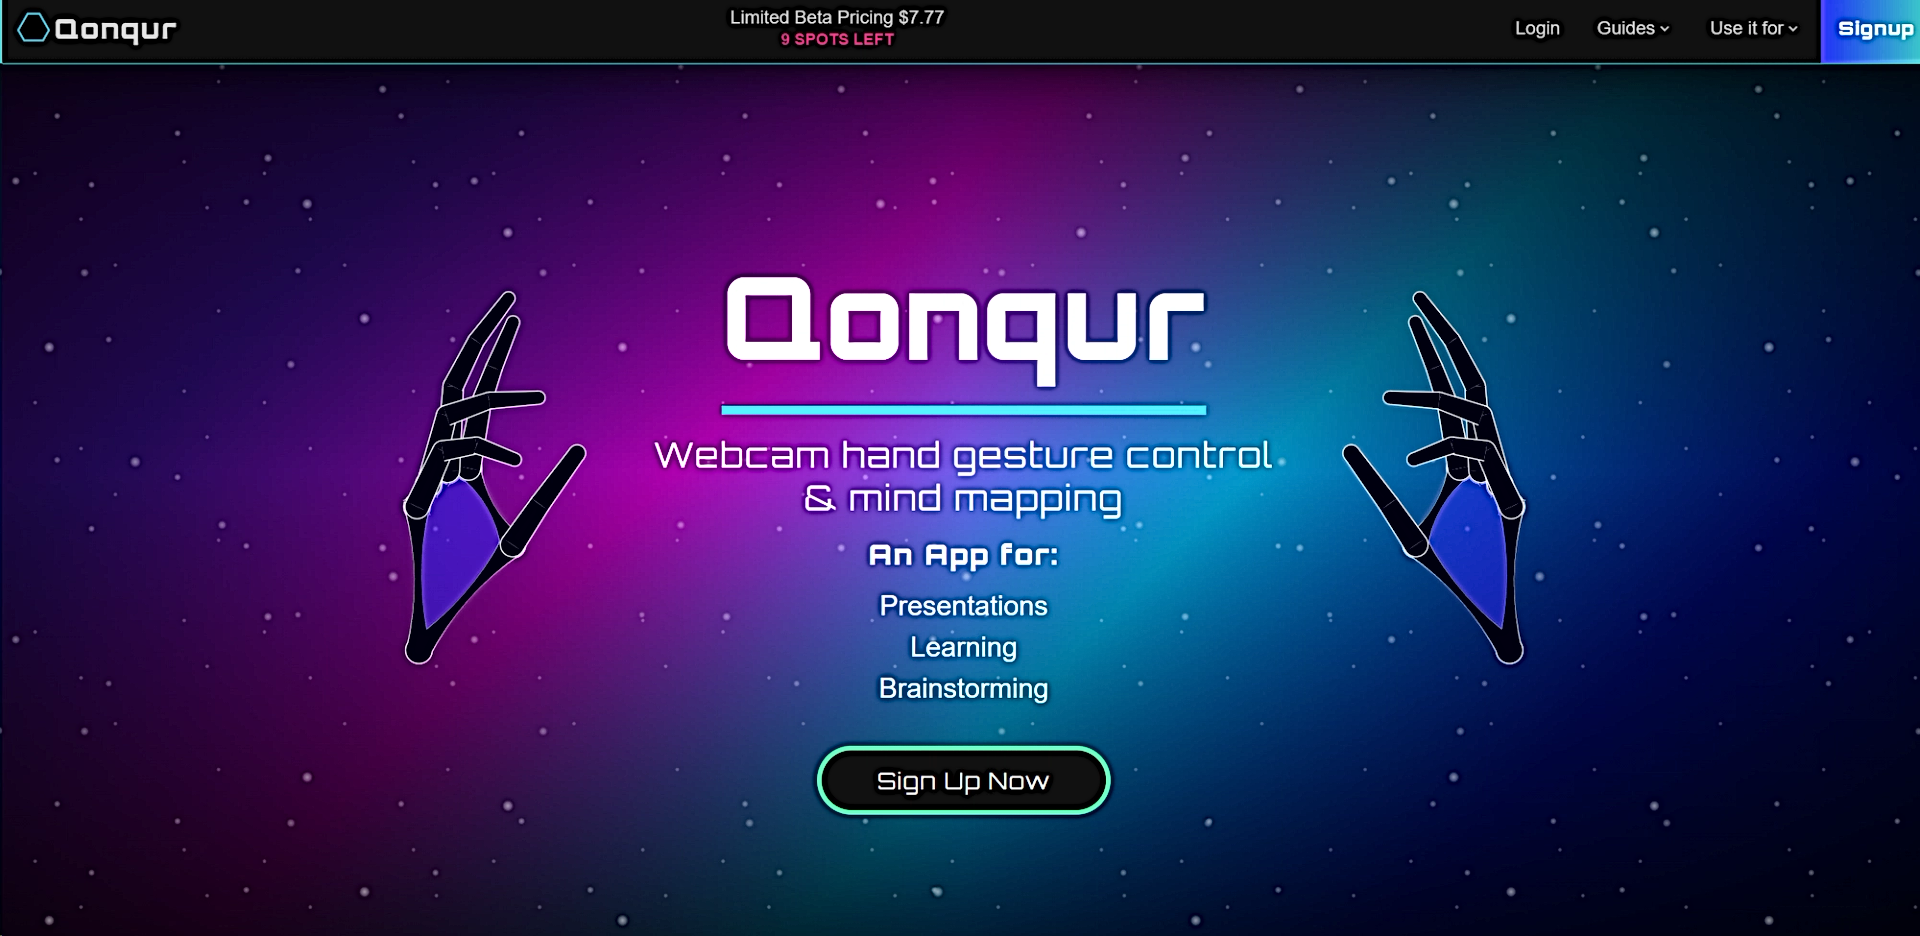 Qonqur featured